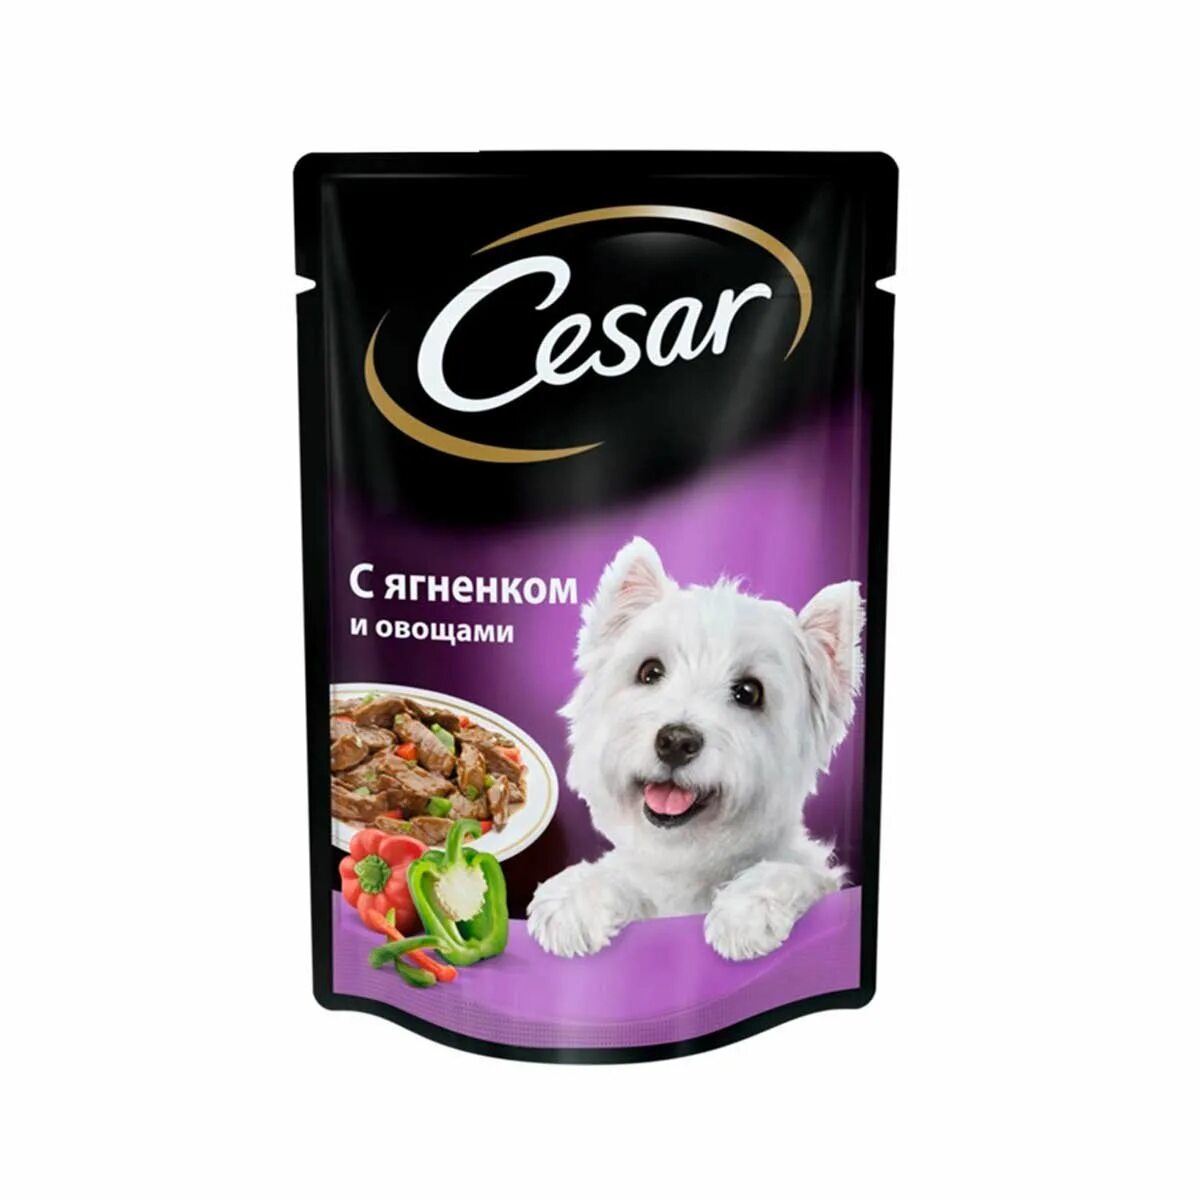 Влажный корм для собак Cesar. Сезар корм влажный для собак. Cesar д/с жаркое с уткой м/п 85г/28. Cesar для собак 85г. Корм для собак красноярск